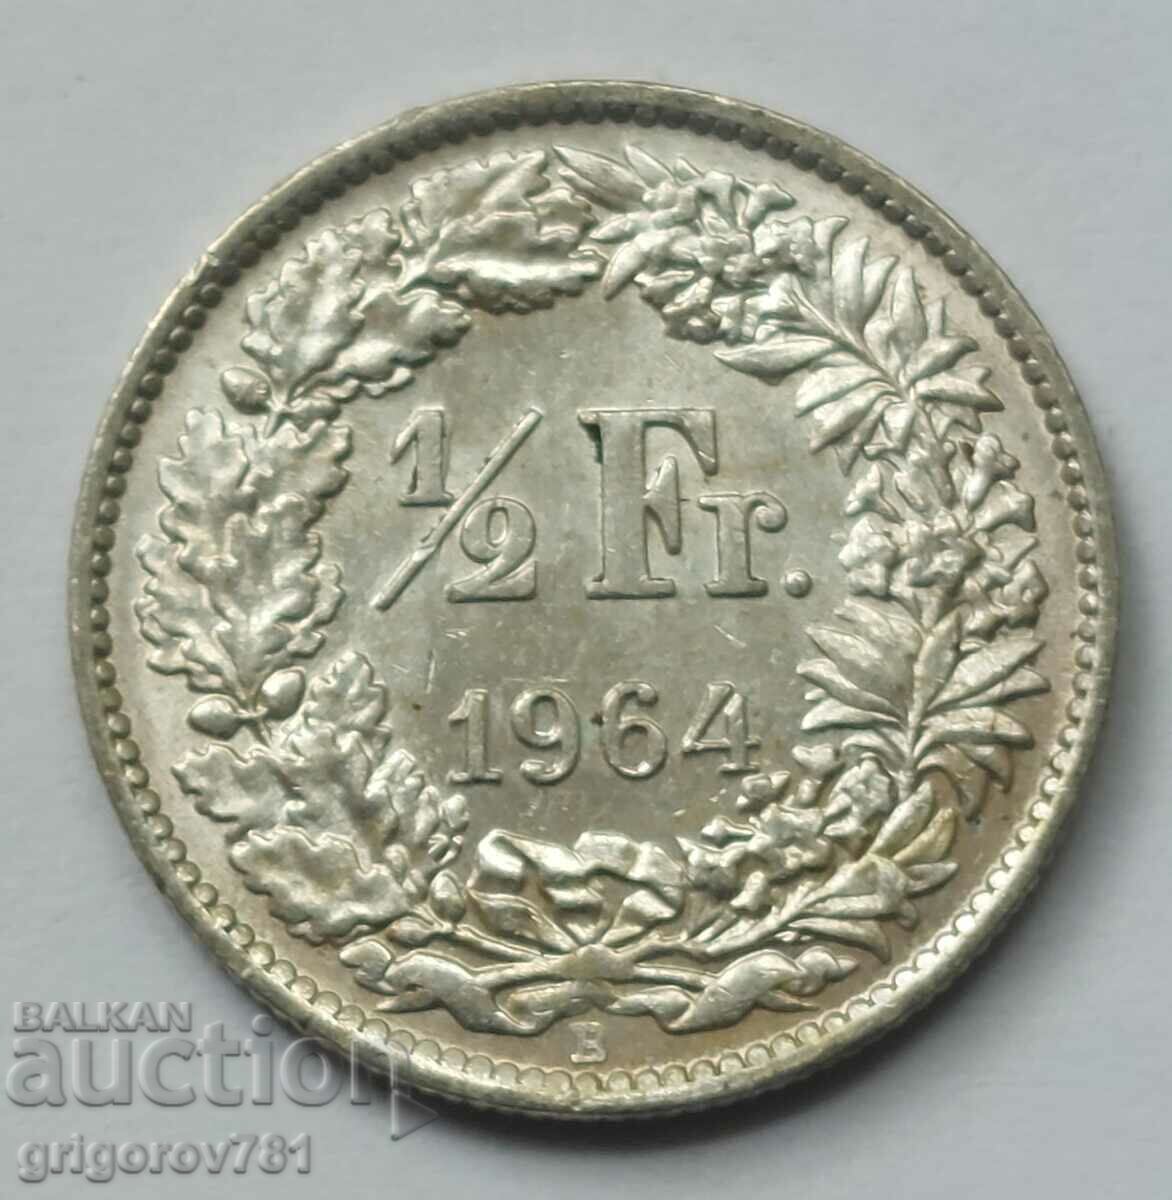 Ασημένιο φράγκο 1/2 Ελβετία 1964 Β - Ασημένιο νόμισμα #108